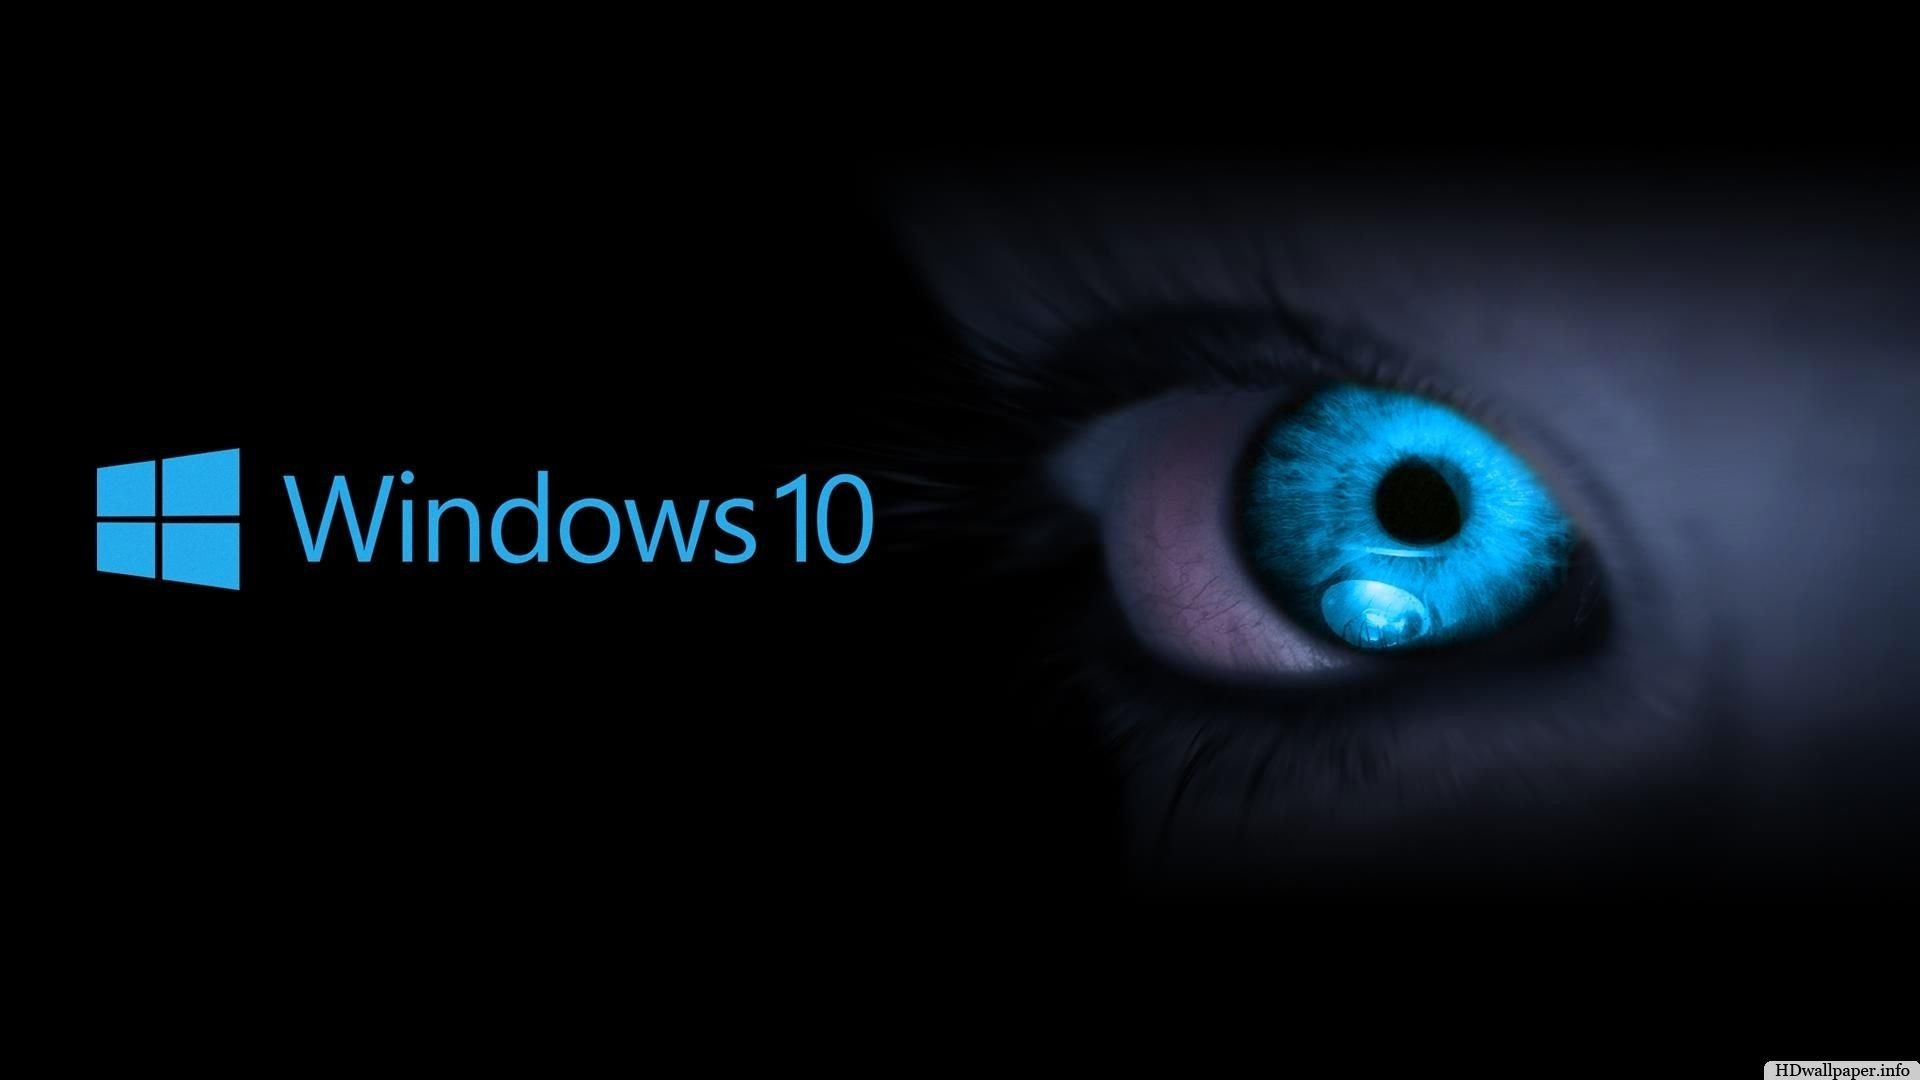 1920x1080 ÐÑÐºÐ°Ñ Ð¾Ð±Ð½Ð¾Ð²Ð»ÐµÐ½Ð¸Ñ Windows 10 Windows 10 Desktop Backgrounds, Wallpaper  Windows 10, Desktop Wallpaper 